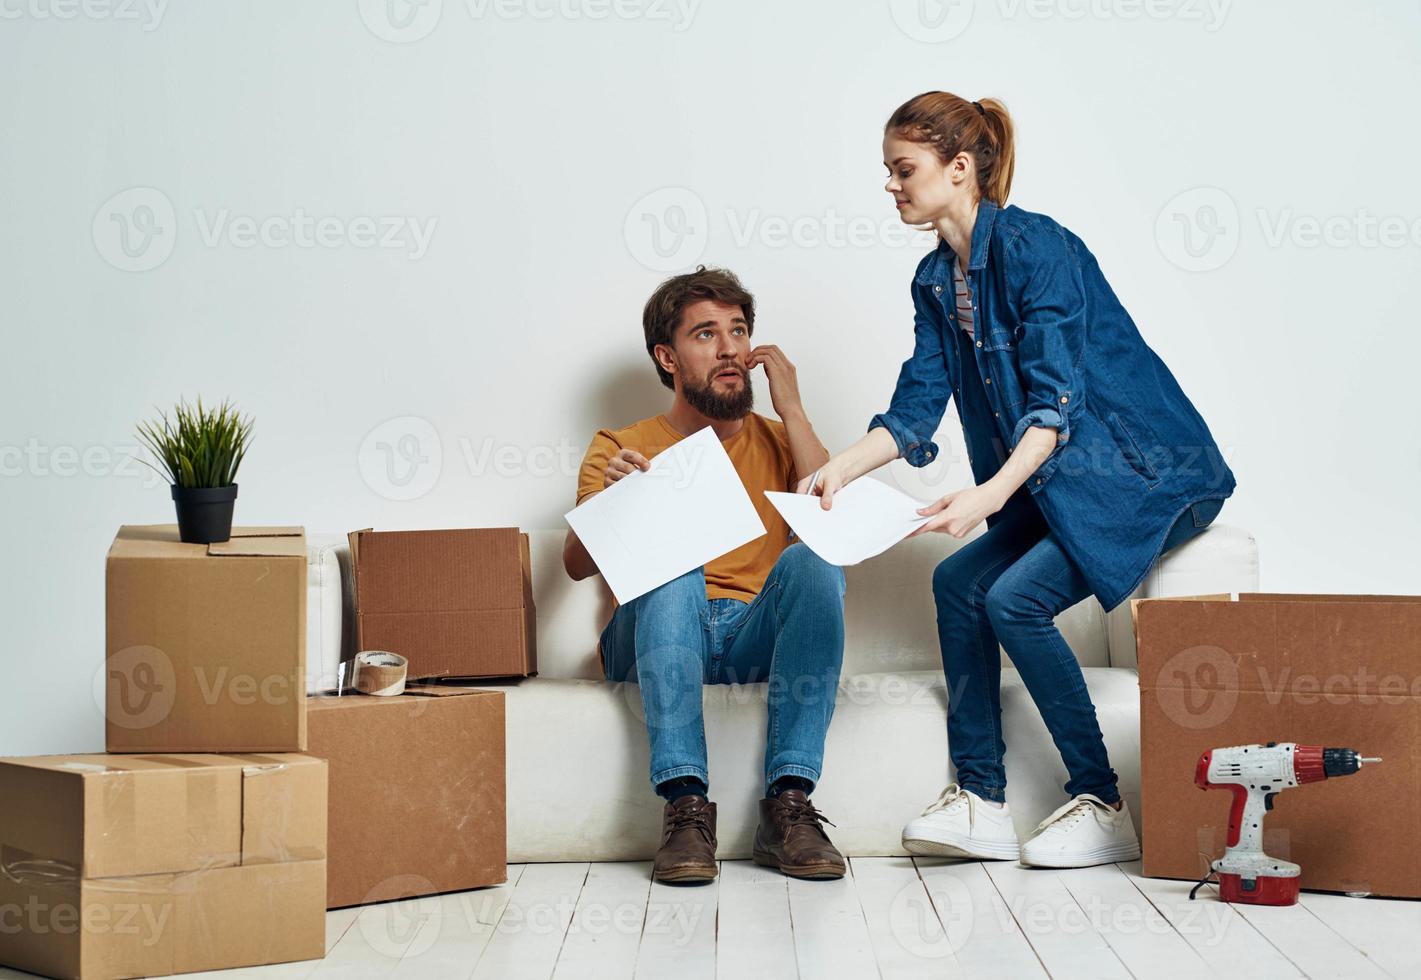 jung Paar auf Weiß Couch mit Kisten von Spaß chatten foto